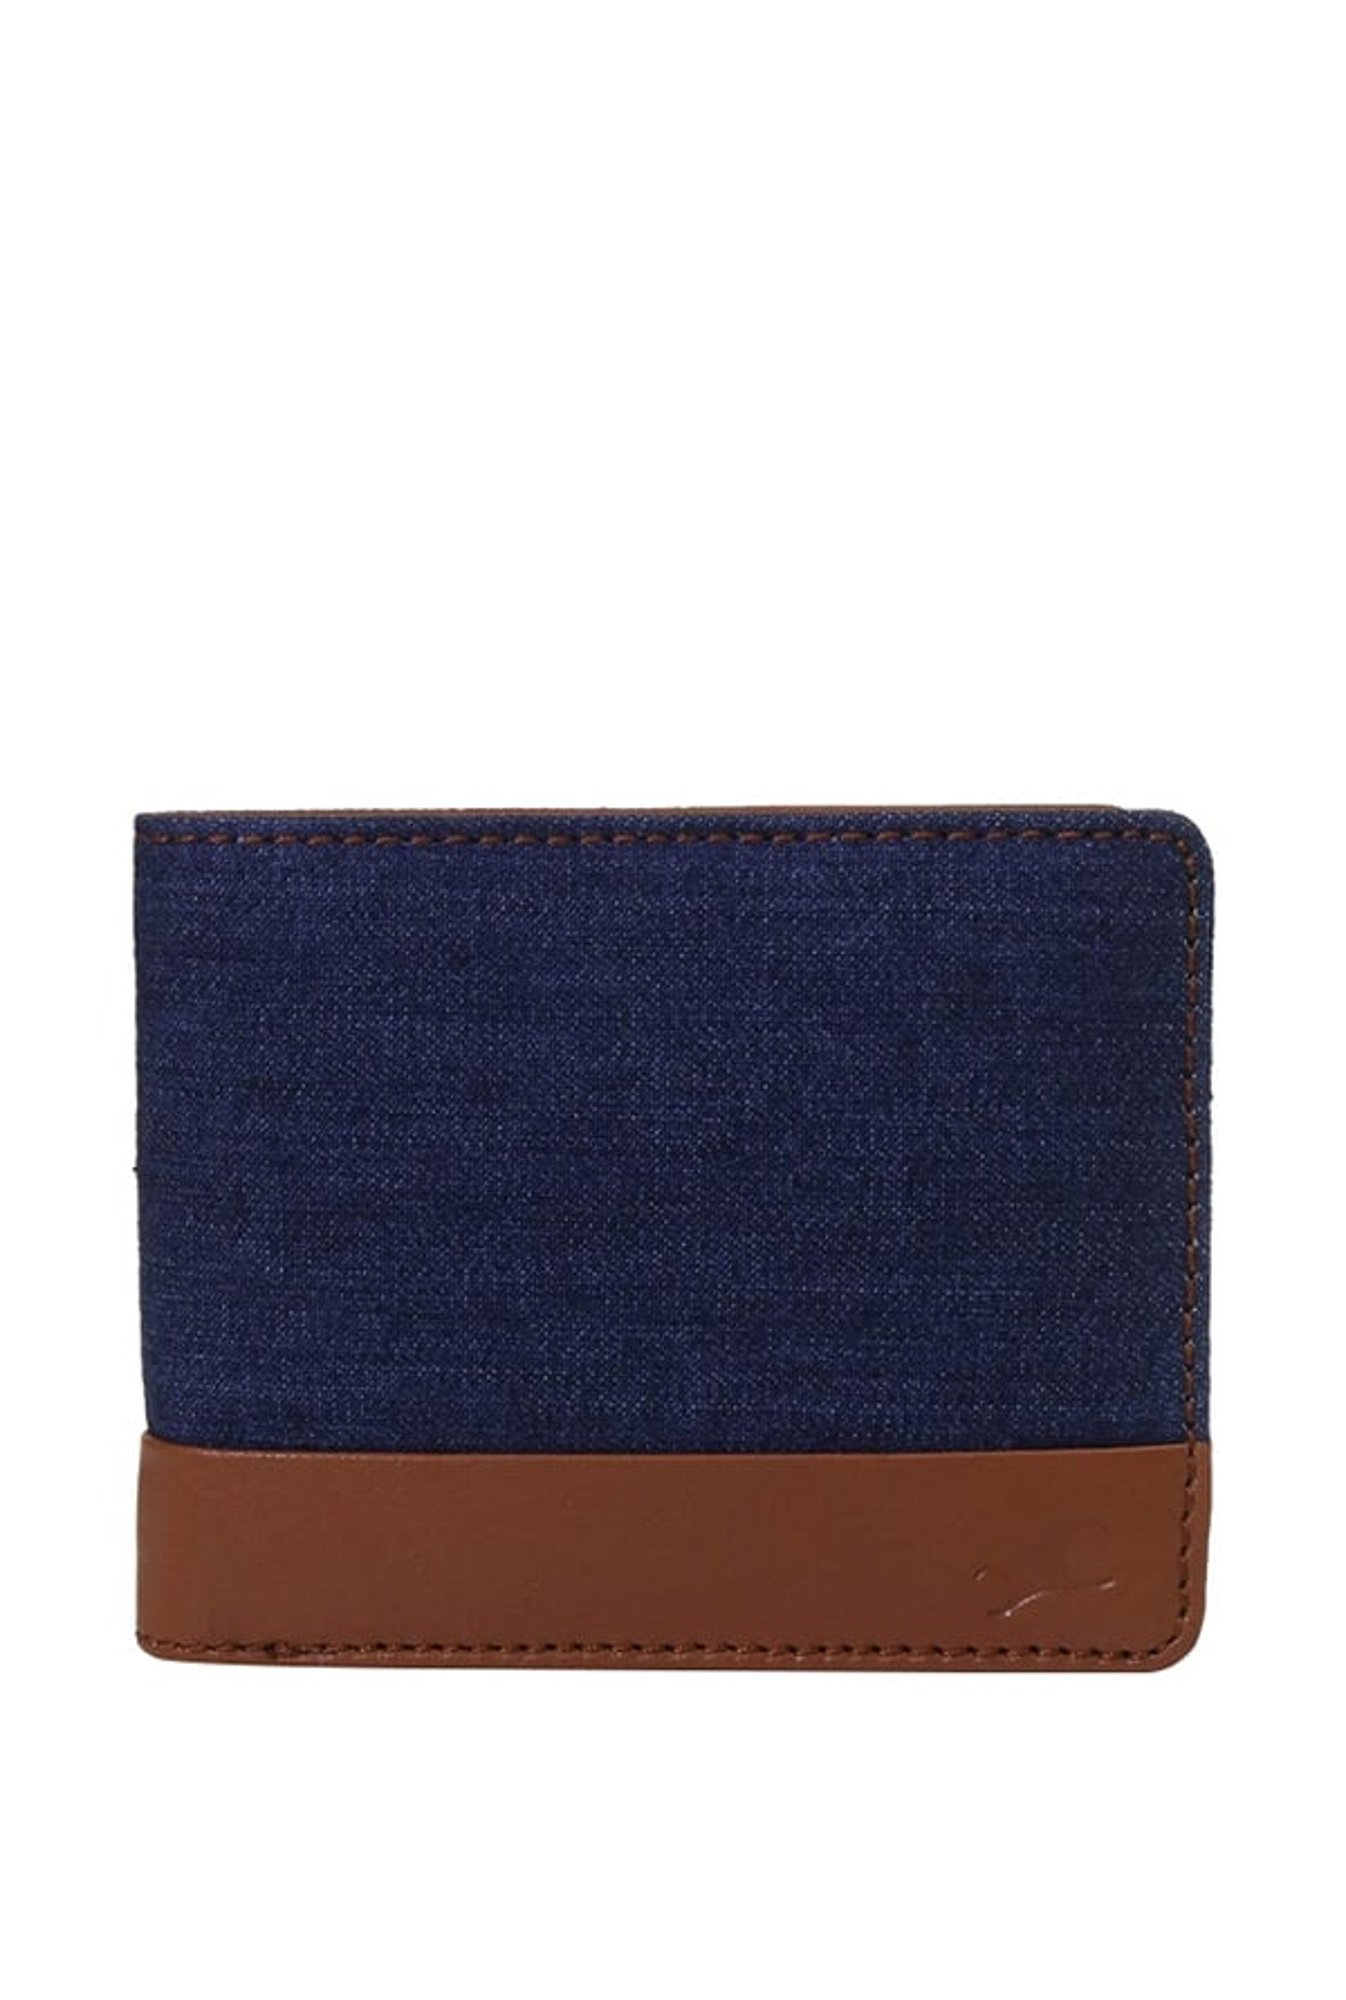 Buy Van Heusen Men Leather Two Fold Wallet - Wallets for Men 22879174 |  Myntra